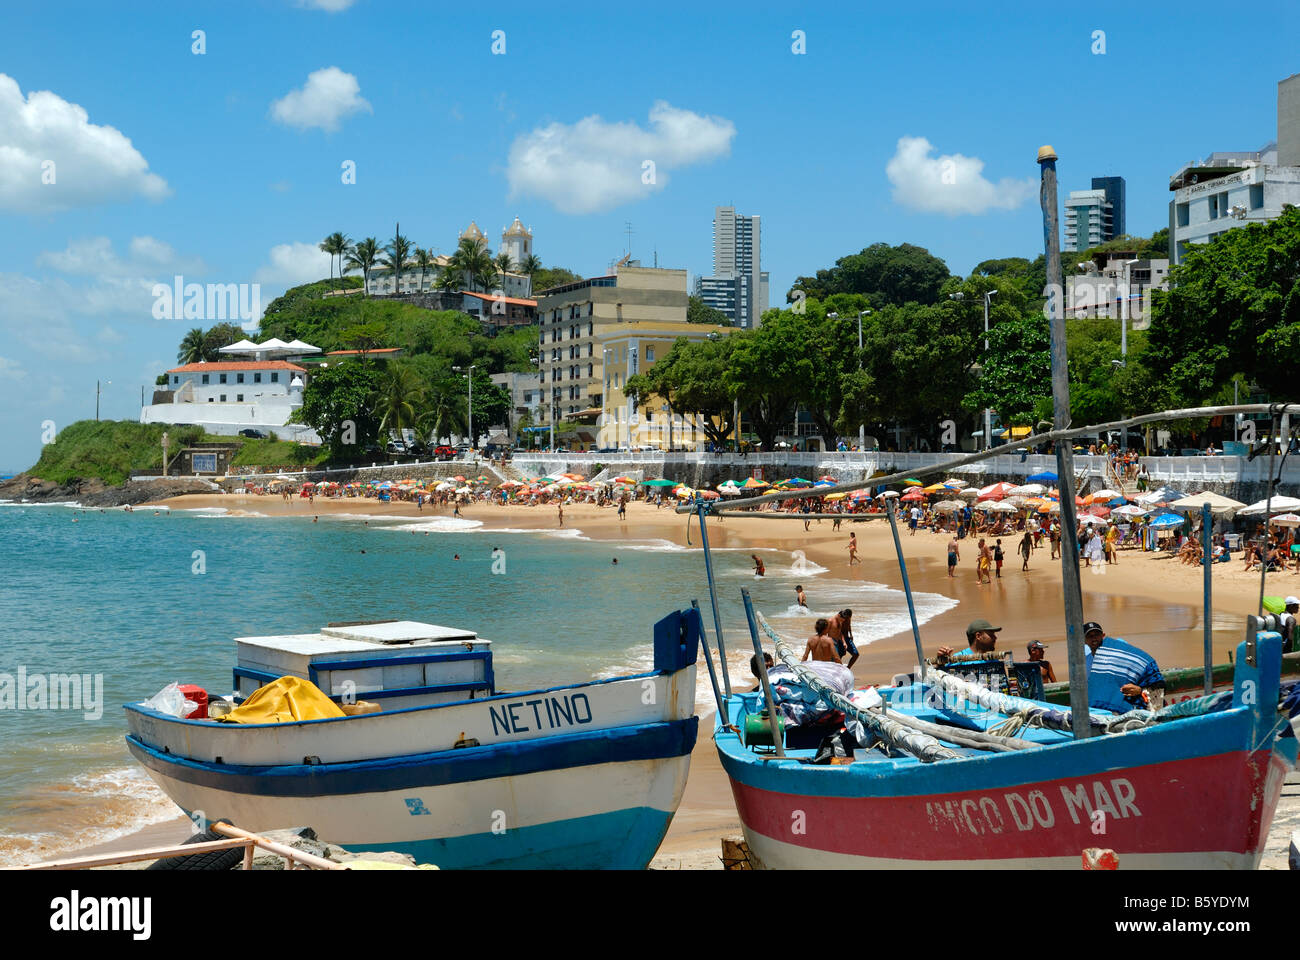 Beach at Porto da Barra, Salvador, Bahia, Brazil Stock Photo